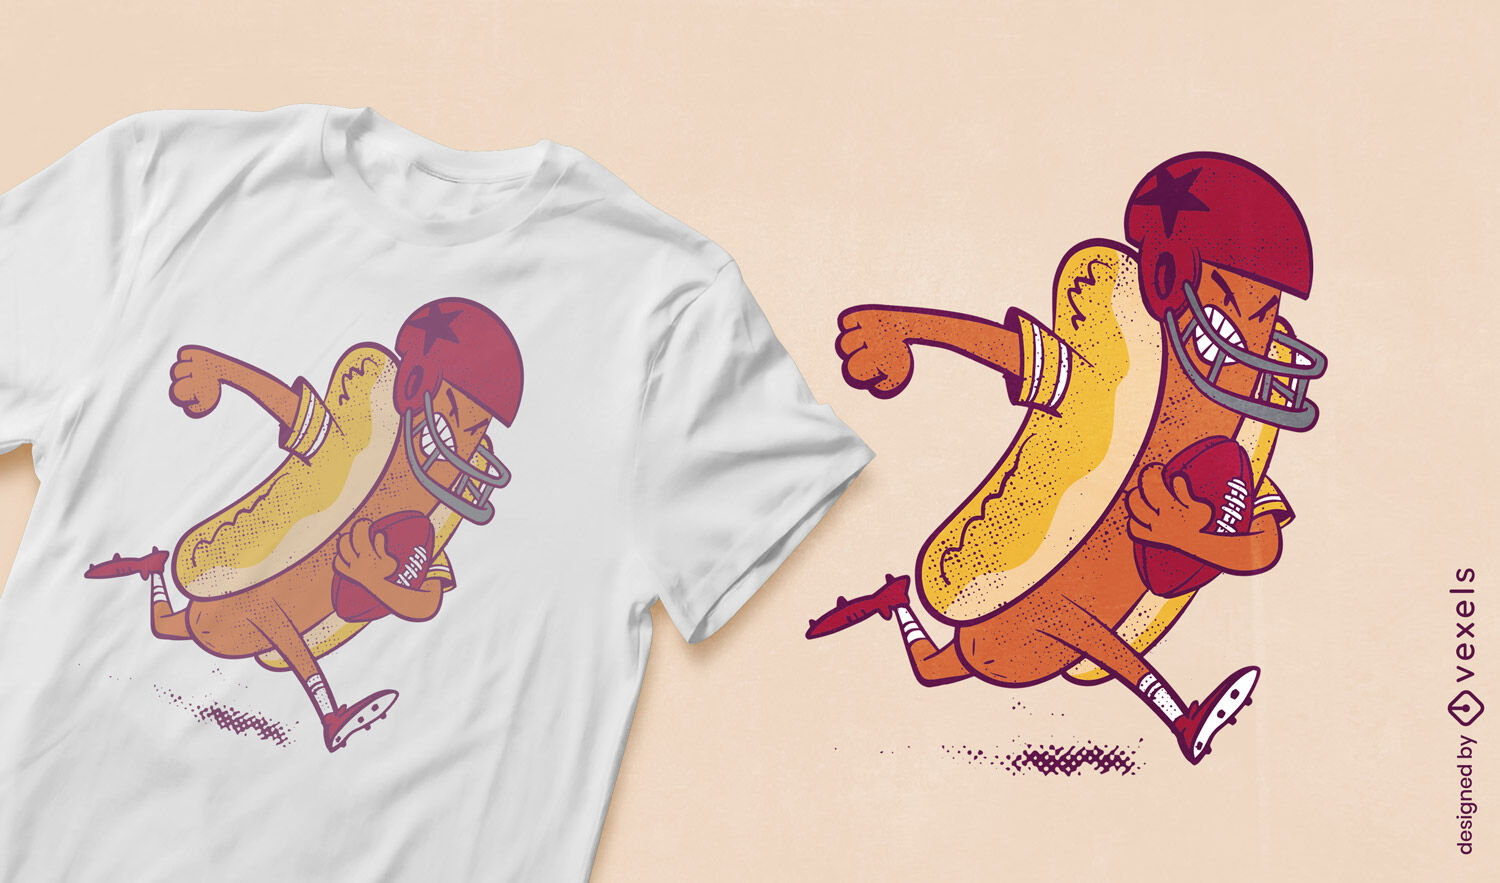 Hot dog football player t-shirt design